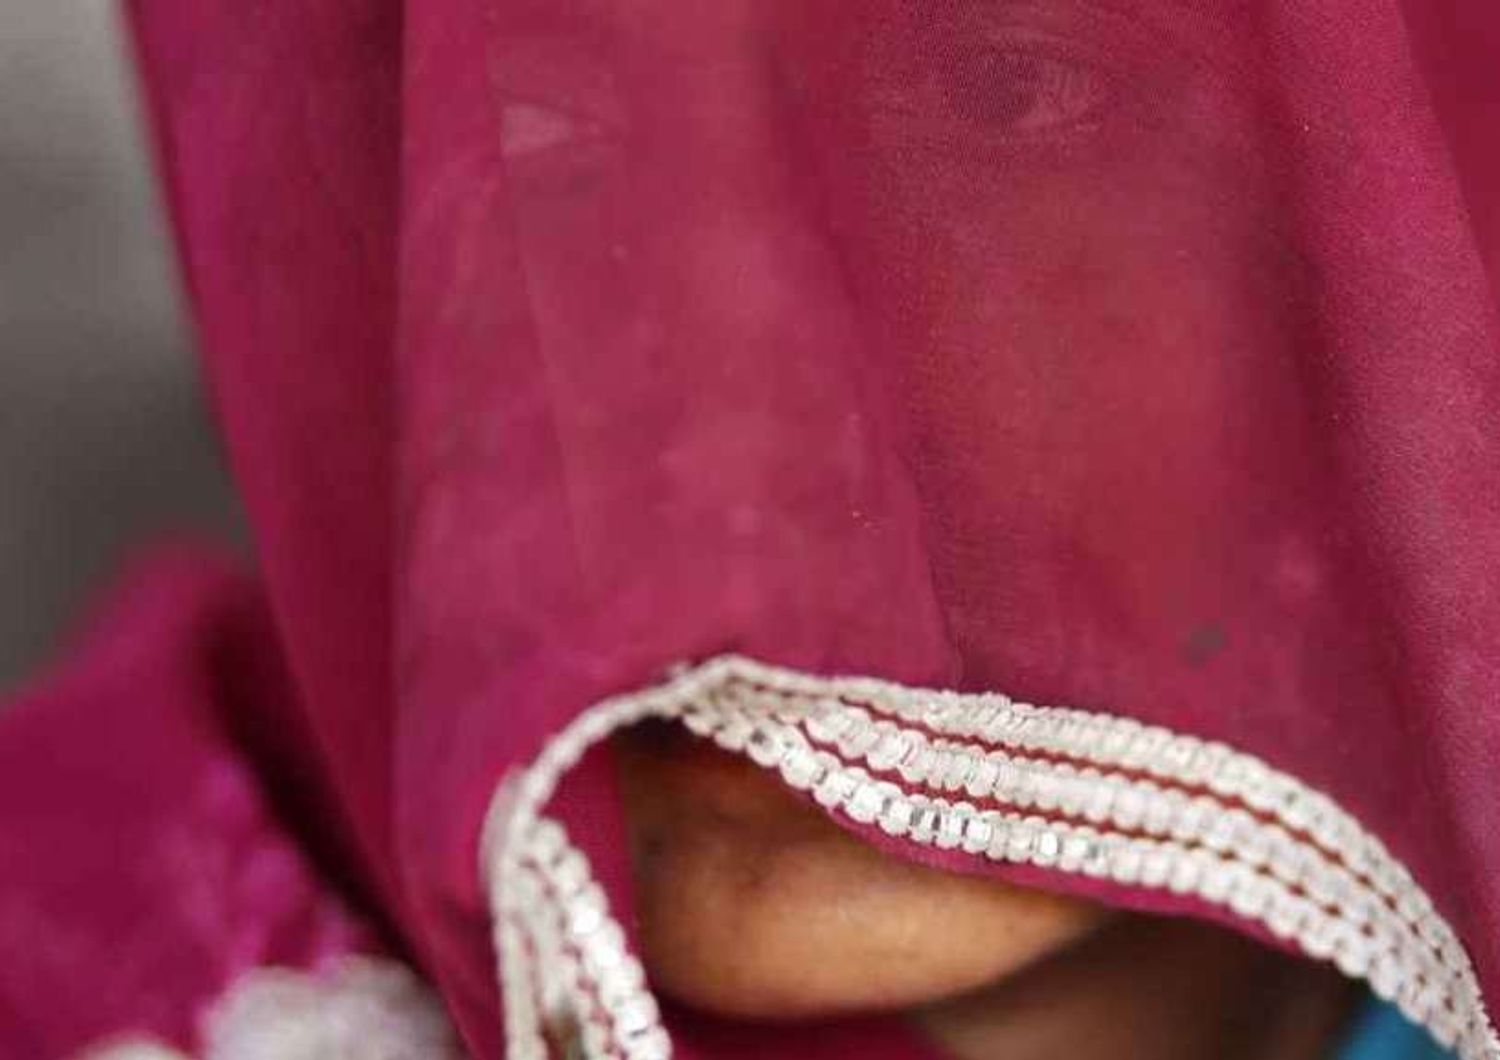 India: novizia di 17 anni stuprata da tre uomini in istituto suore di Bangalore